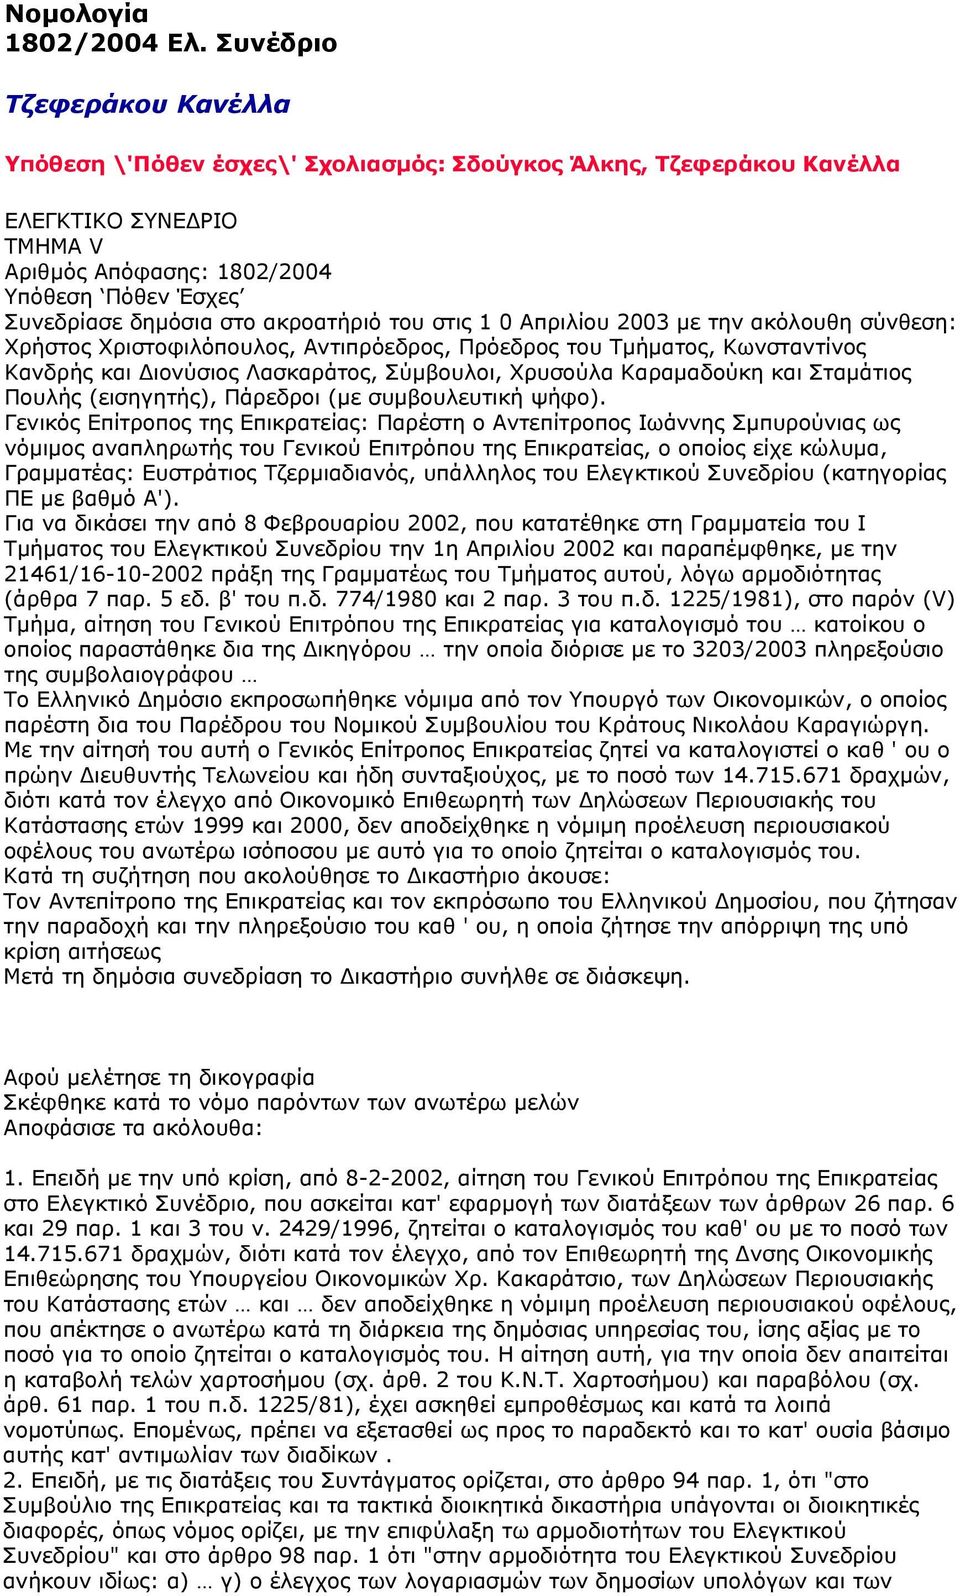 ακροατήριό του στις 1 0 Απριλίου 2003 με την ακόλουθη σύνθεση: Χρήστος Χριστοφιλόπουλος, Αντιπρόεδρος, Πρόεδρος του Τμήματος, Κωνσταντίνος Κανδρής και Διονύσιος Λασκαράτος, Σύμβουλοι, Χρυσούλα